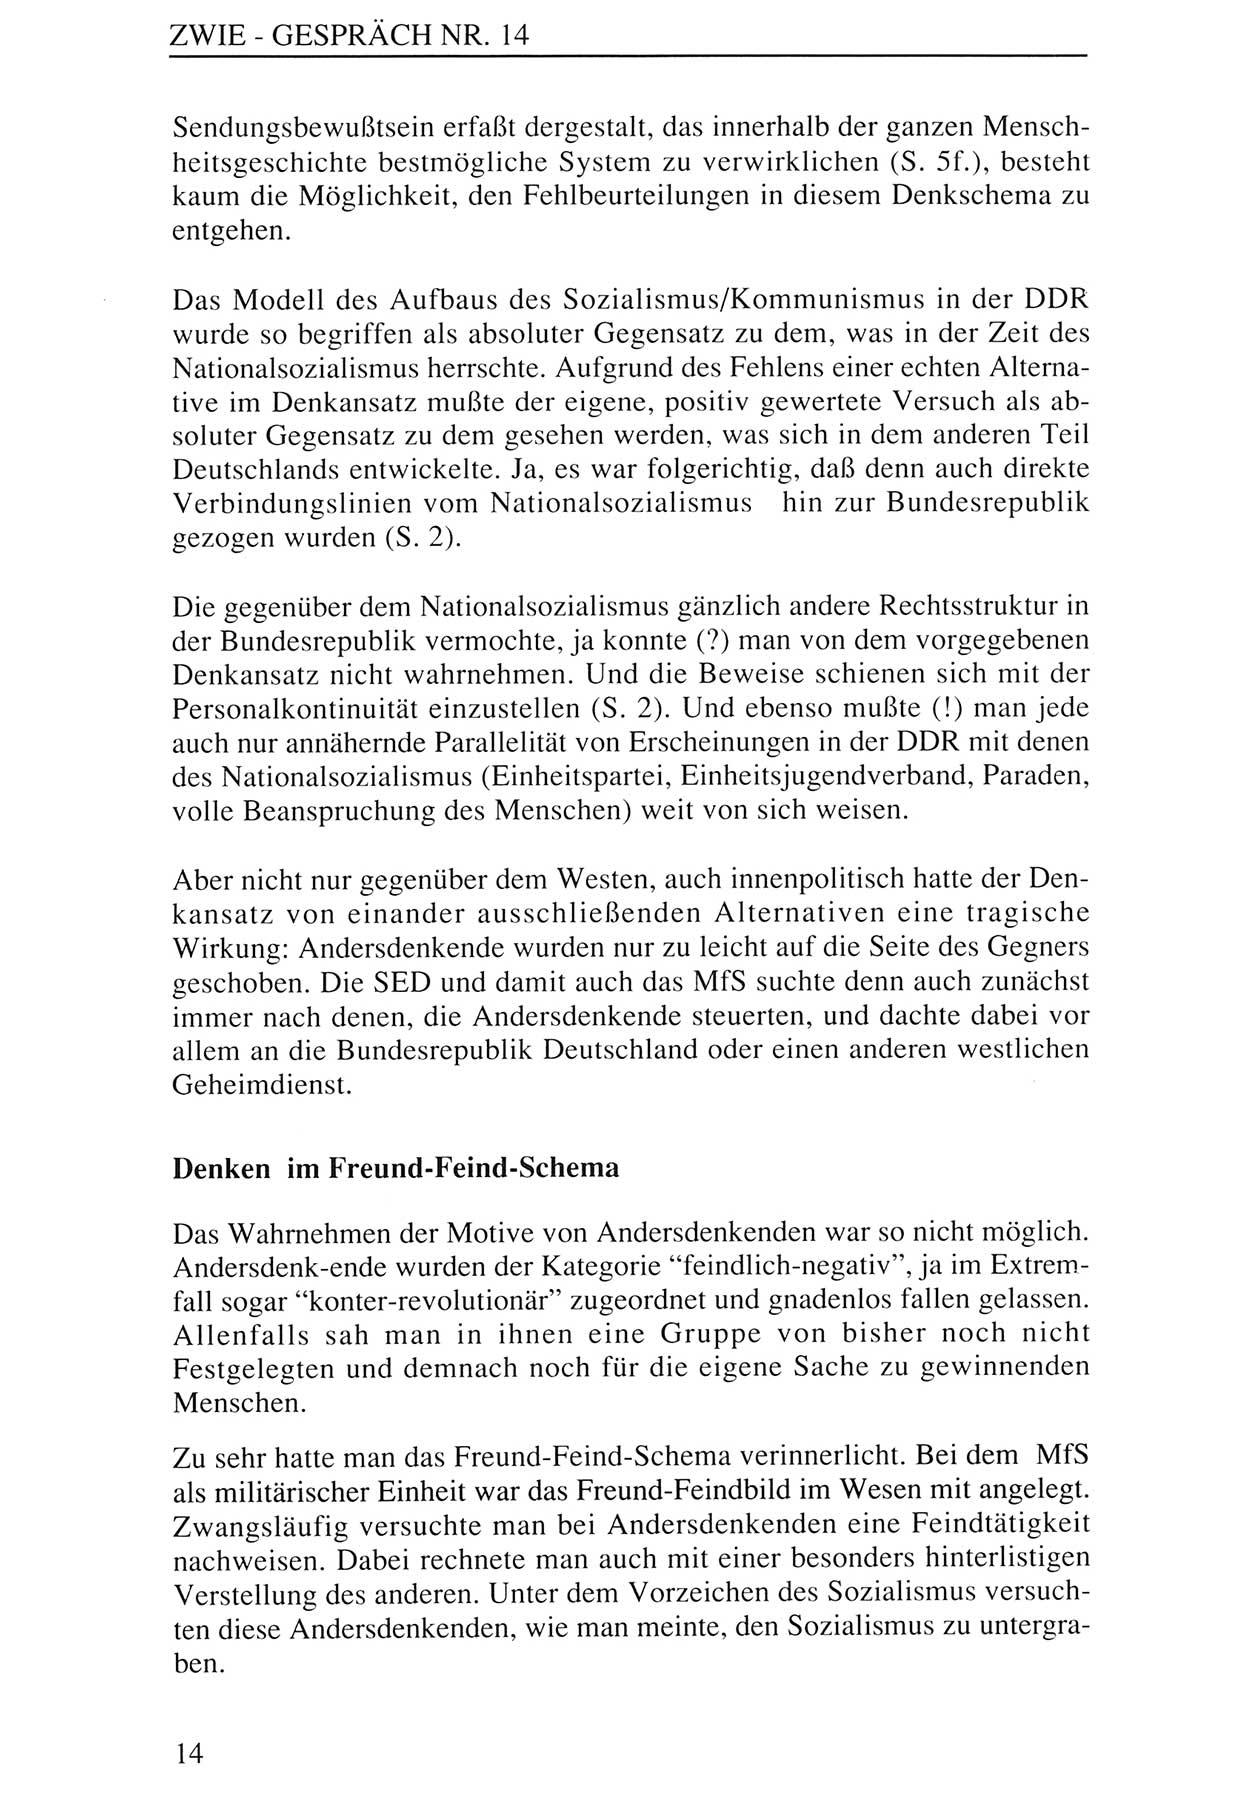 Zwie-Gespräch, Beiträge zur Aufarbeitung der Staatssicherheits-Vergangenheit [Deutsche Demokratische Republik (DDR)], Ausgabe Nr. 14, Berlin 1993, Seite 14 (Zwie-Gespr. Ausg. 14 1993, S. 14)